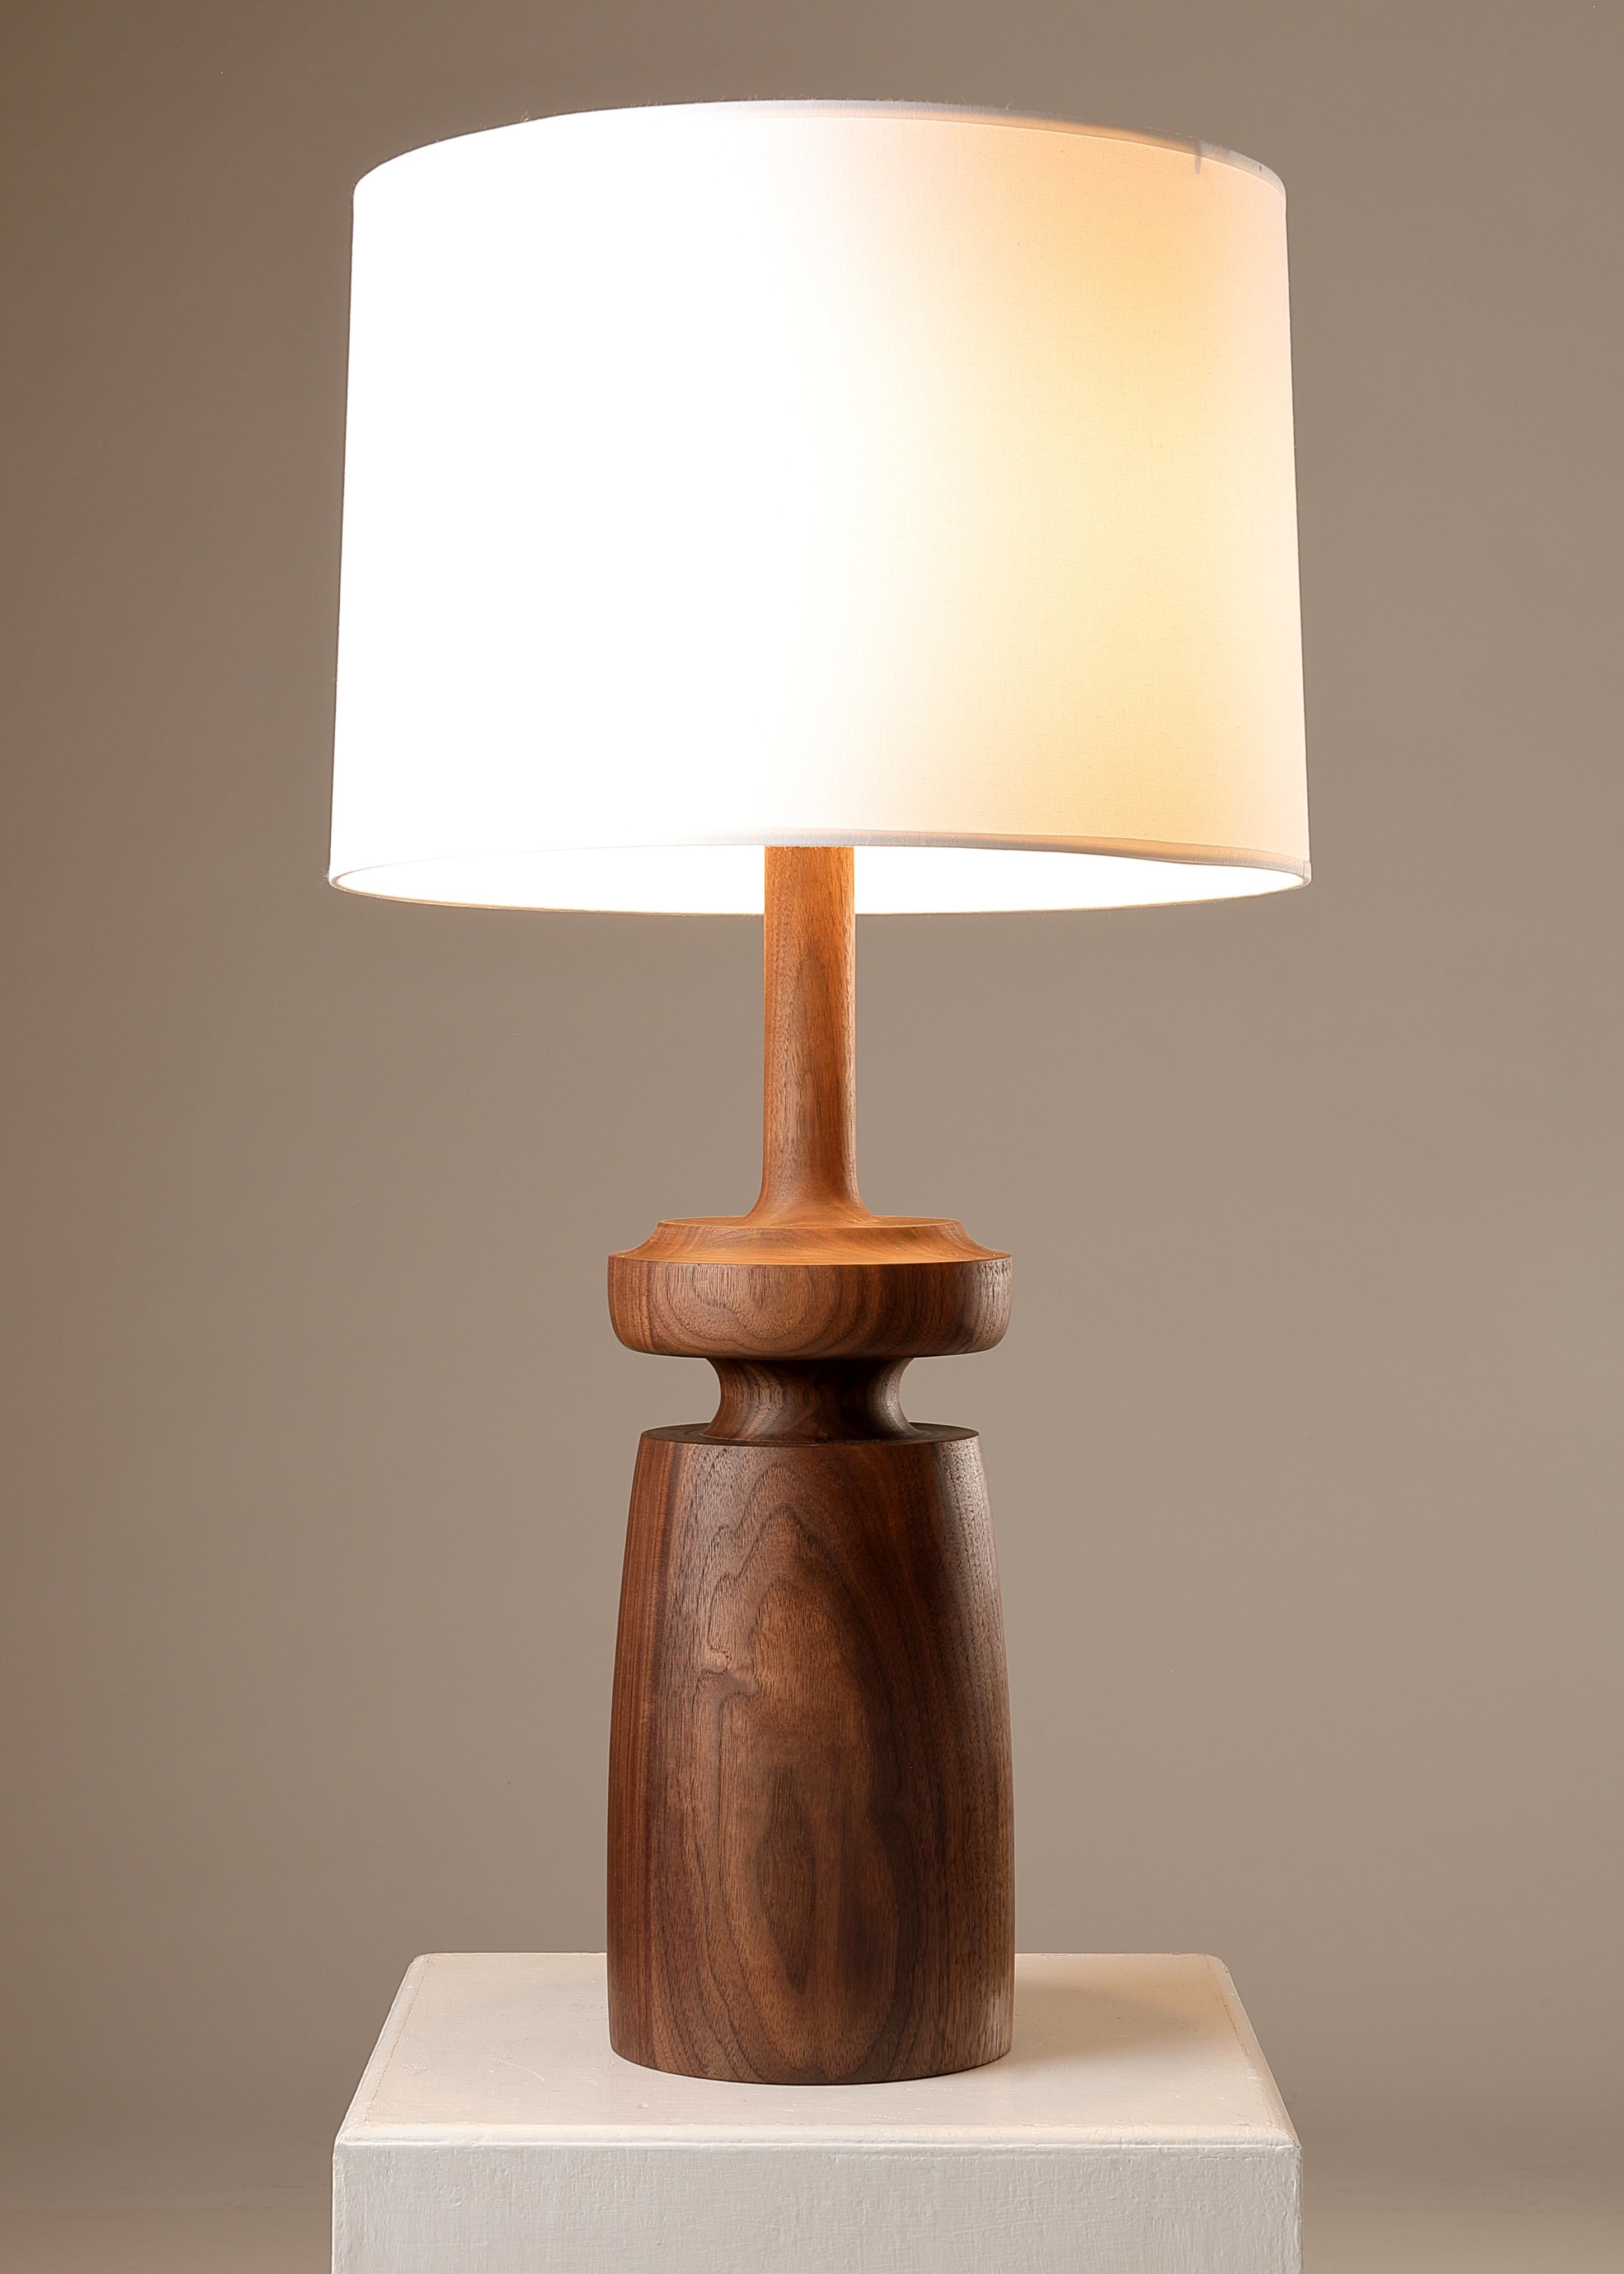 Lampe de table en noyer tourné au tour, form A par Michael Rozell. Un modèle similaire, légèrement plus petit, est également répertorié. 
